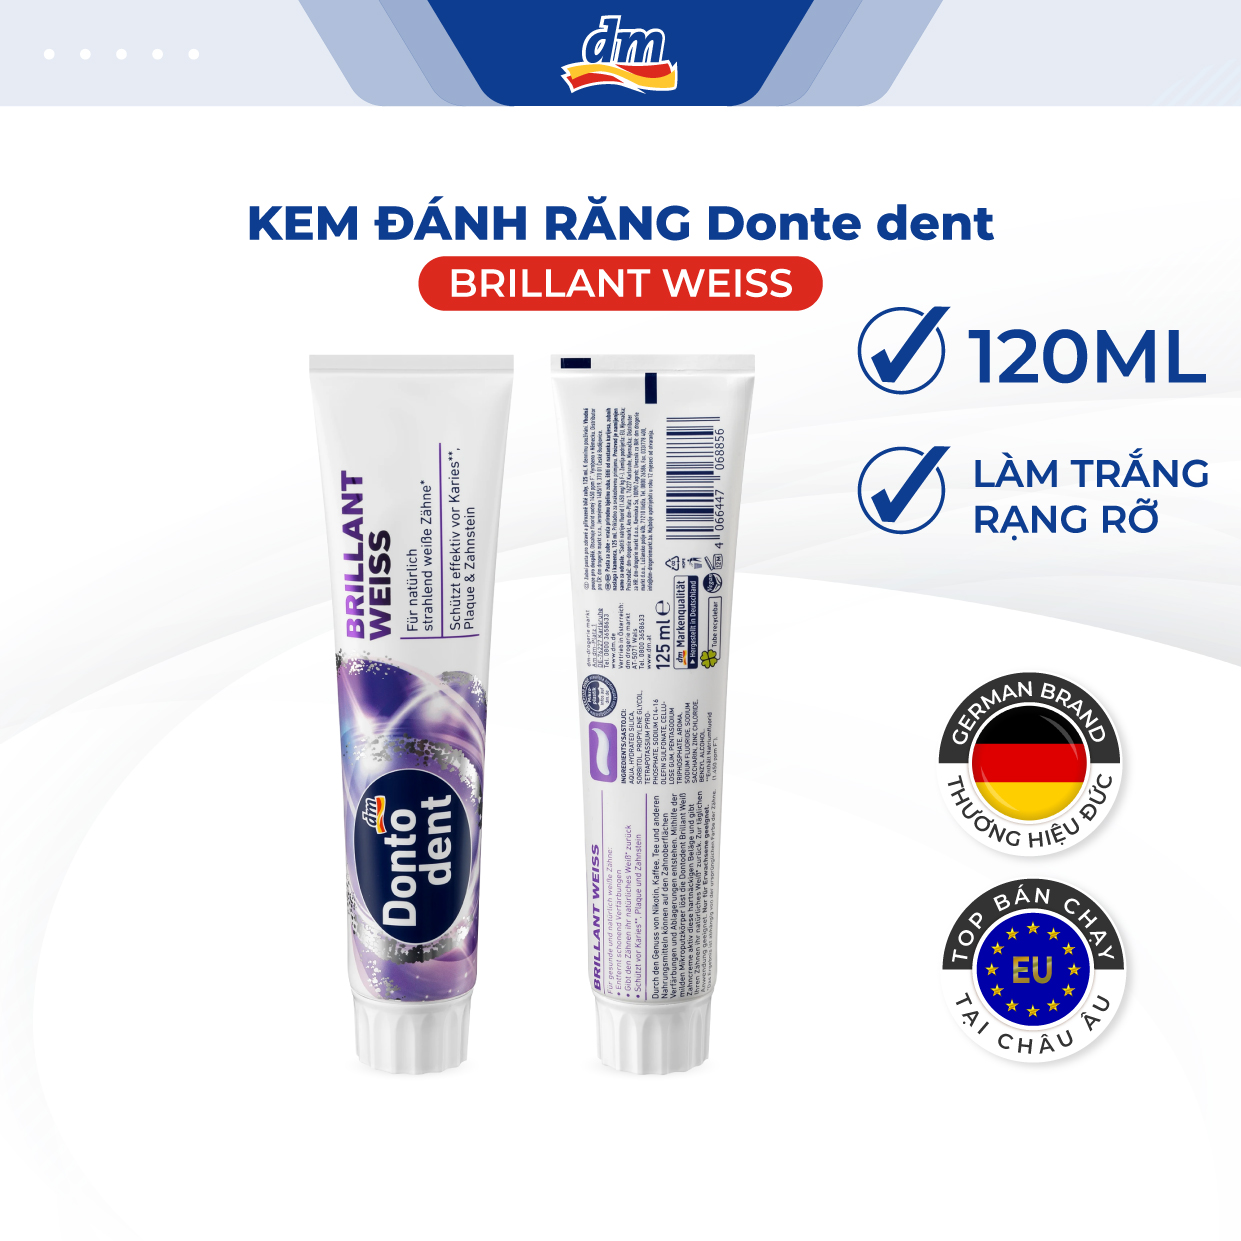 Kem đánh răng DONTODENT Brilliant weiss 125ml trắng sáng tự nhiên, chống cao răng, mảng bám - hàng nhập khẩu Đức